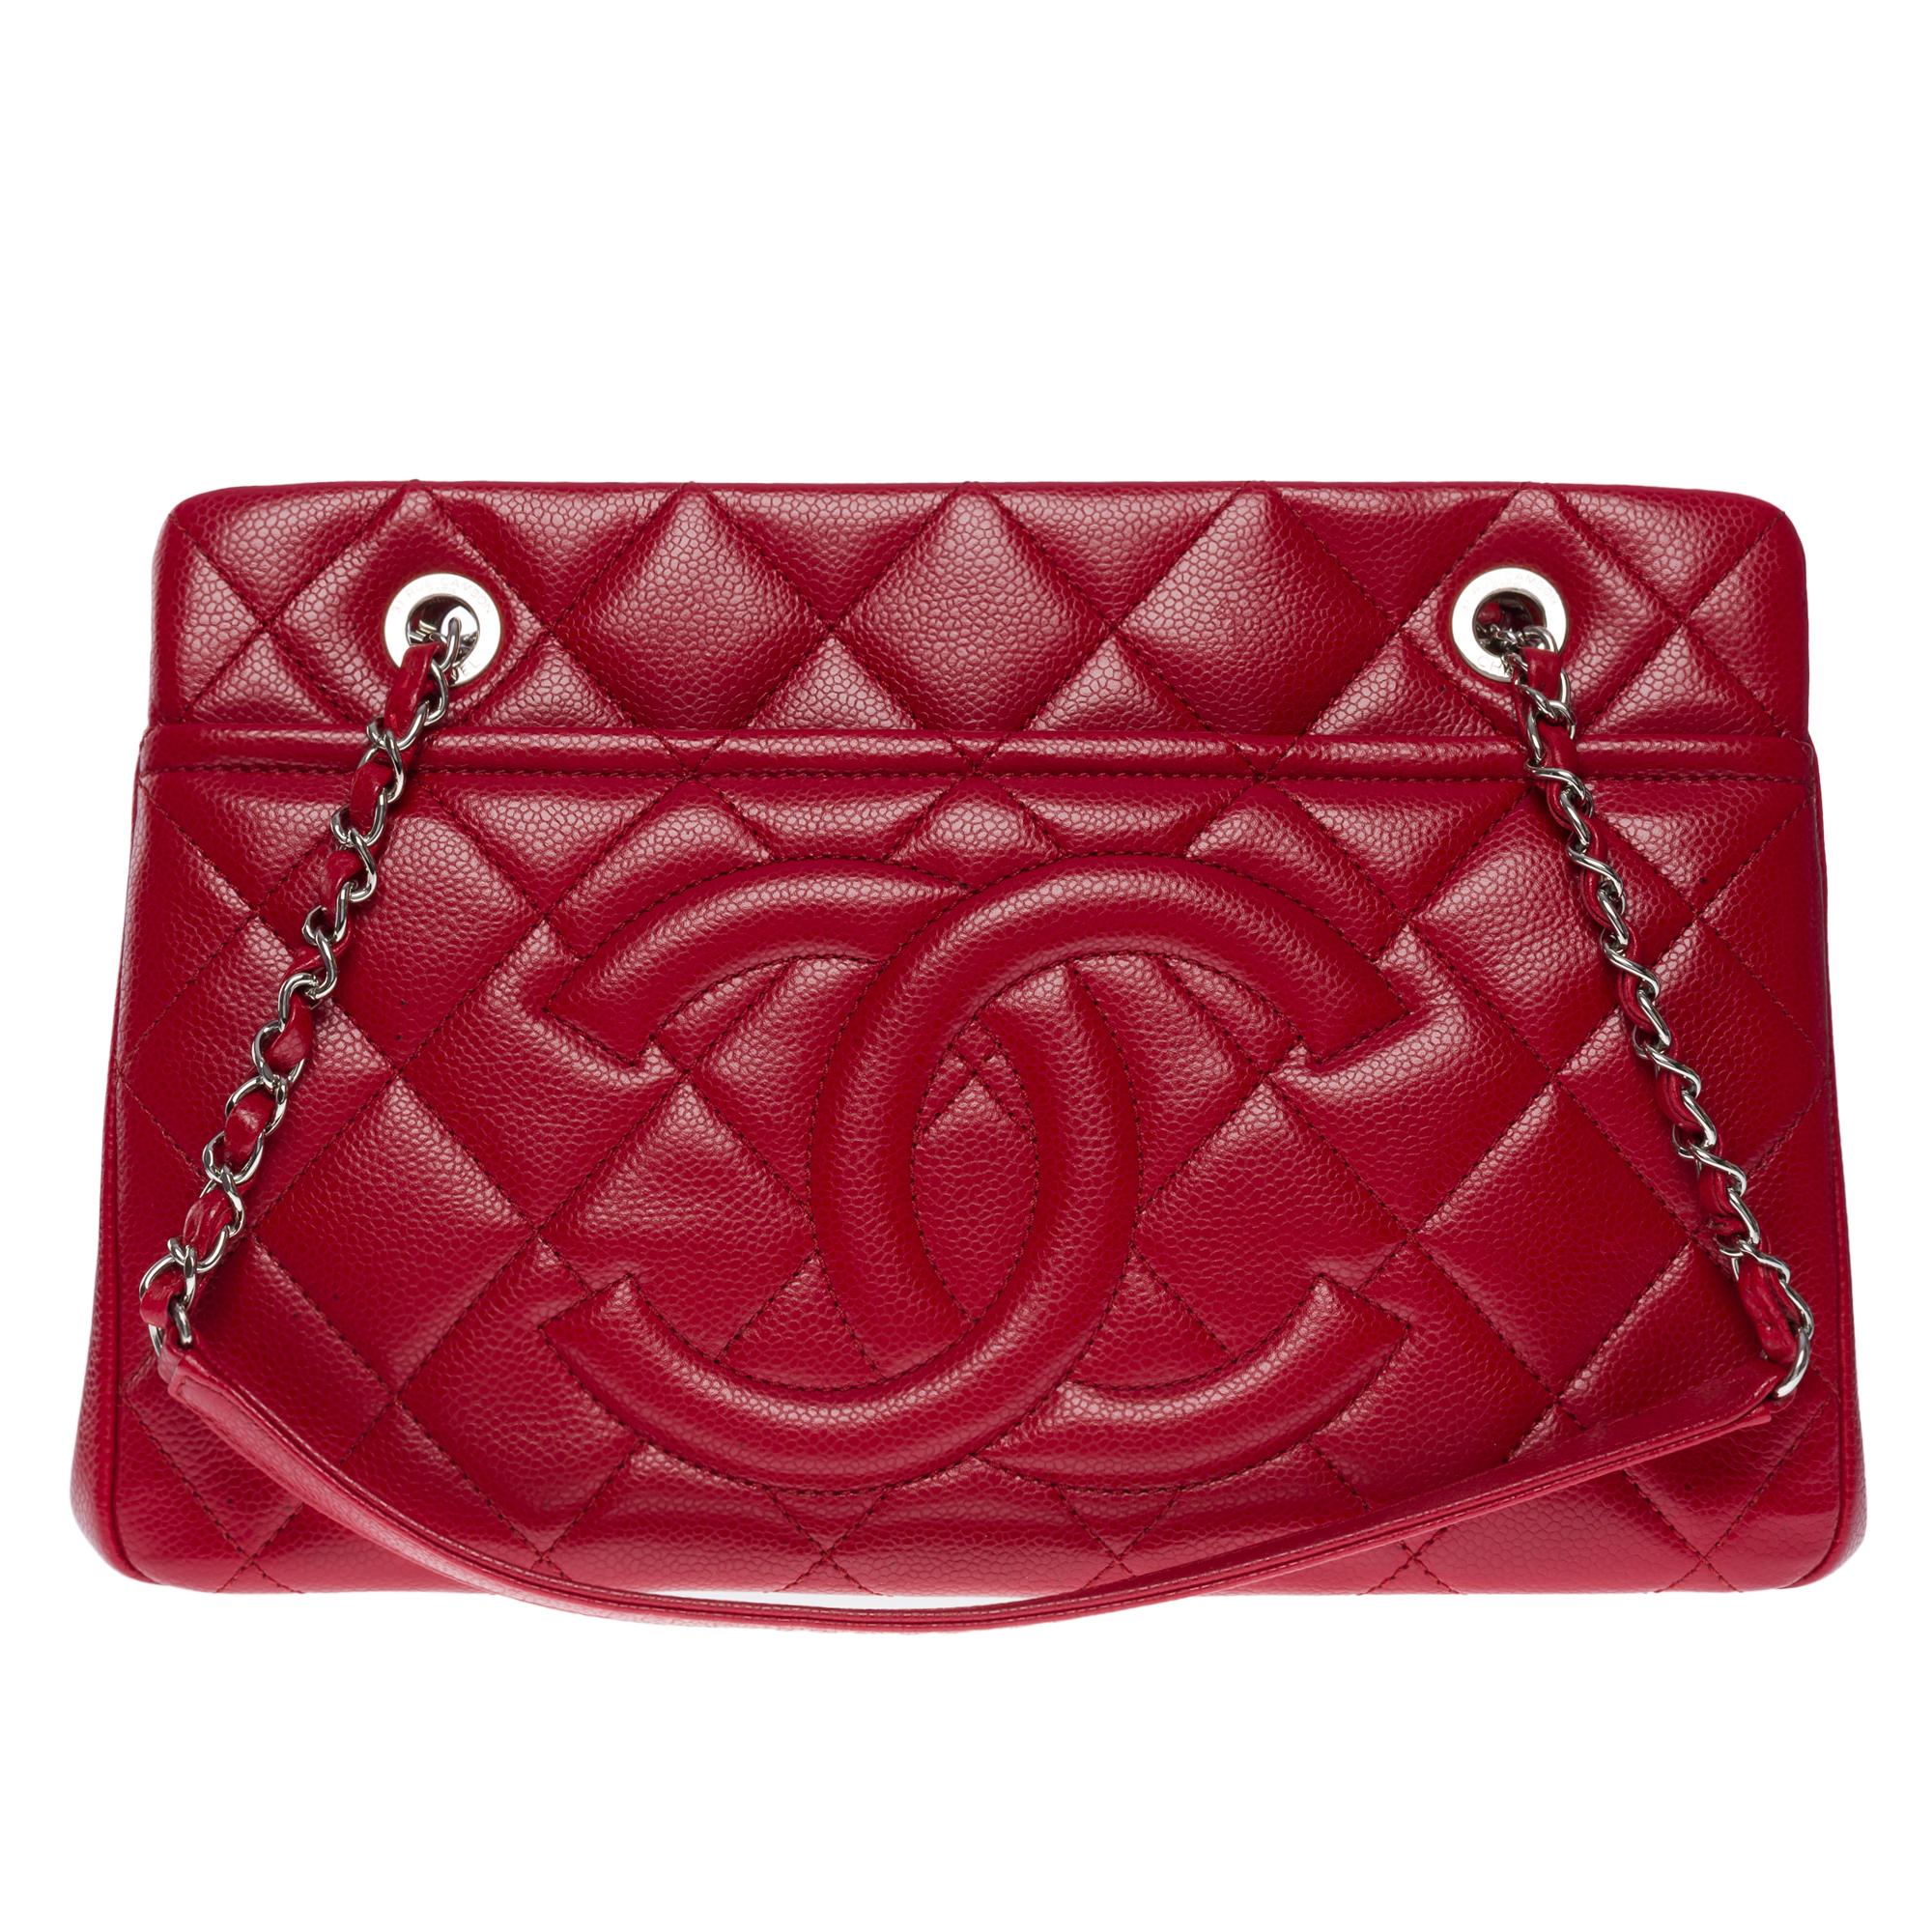 Magnifique sac Chanel Shopping Tote en cuir matelassé rouge caviar, quincaillerie en métal argenté, une double anse en métal argenté entrelacée de cuir rouge permettant un maintien de l'épaule.

1 poche plaquée au dos du sac
Fermeture zippée sur le